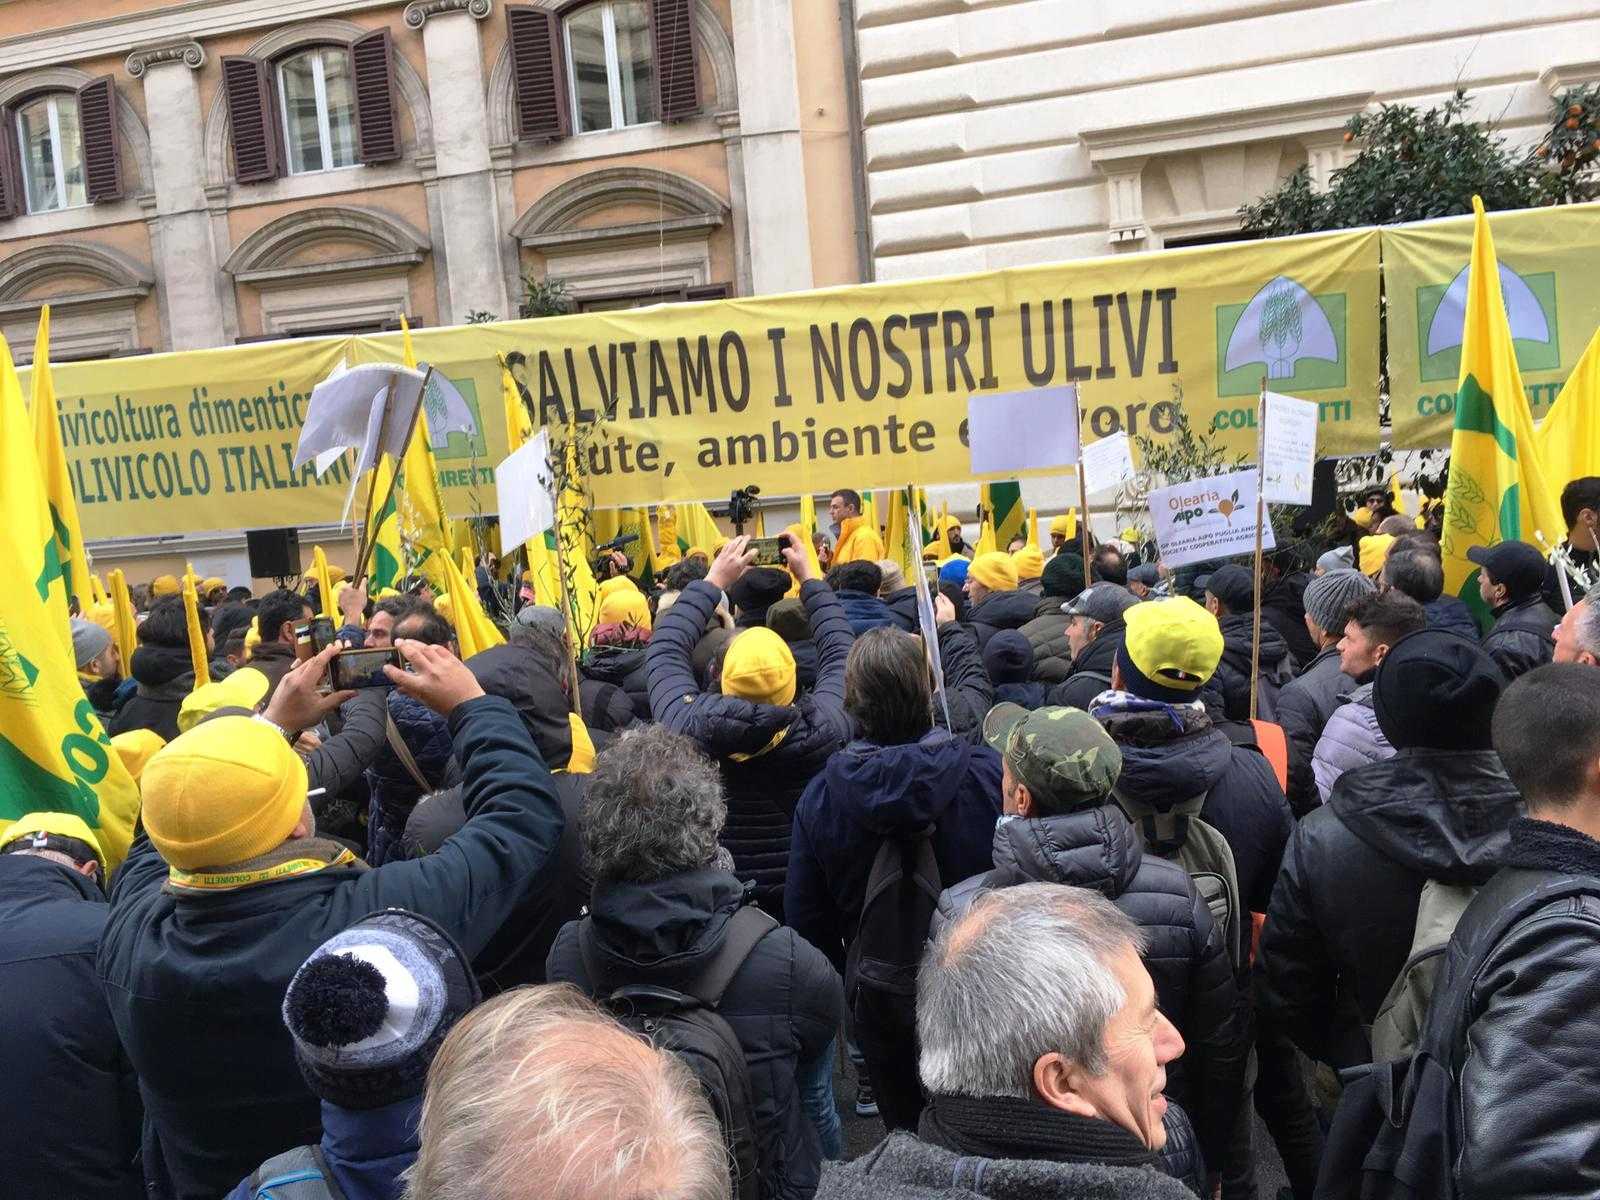 Coldiretti olio d’oliva: la manifestazione a Roma. Presentato il piano “salvaolio”